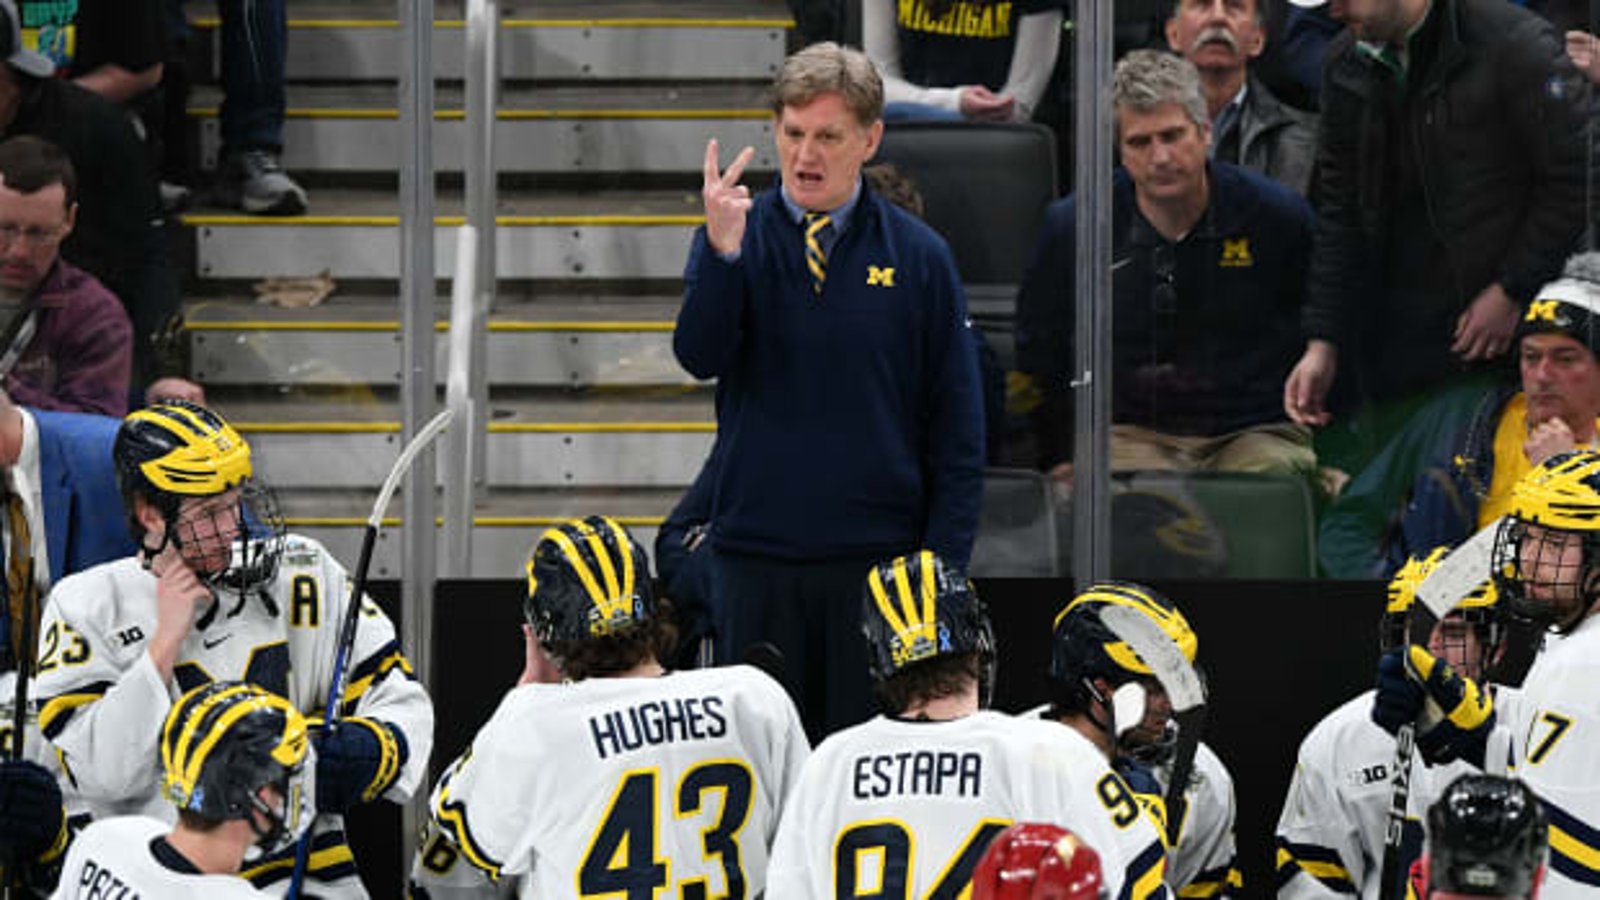 L'Université du Michigan renvoie son entraîneur-chef suite à un régime d'oppression